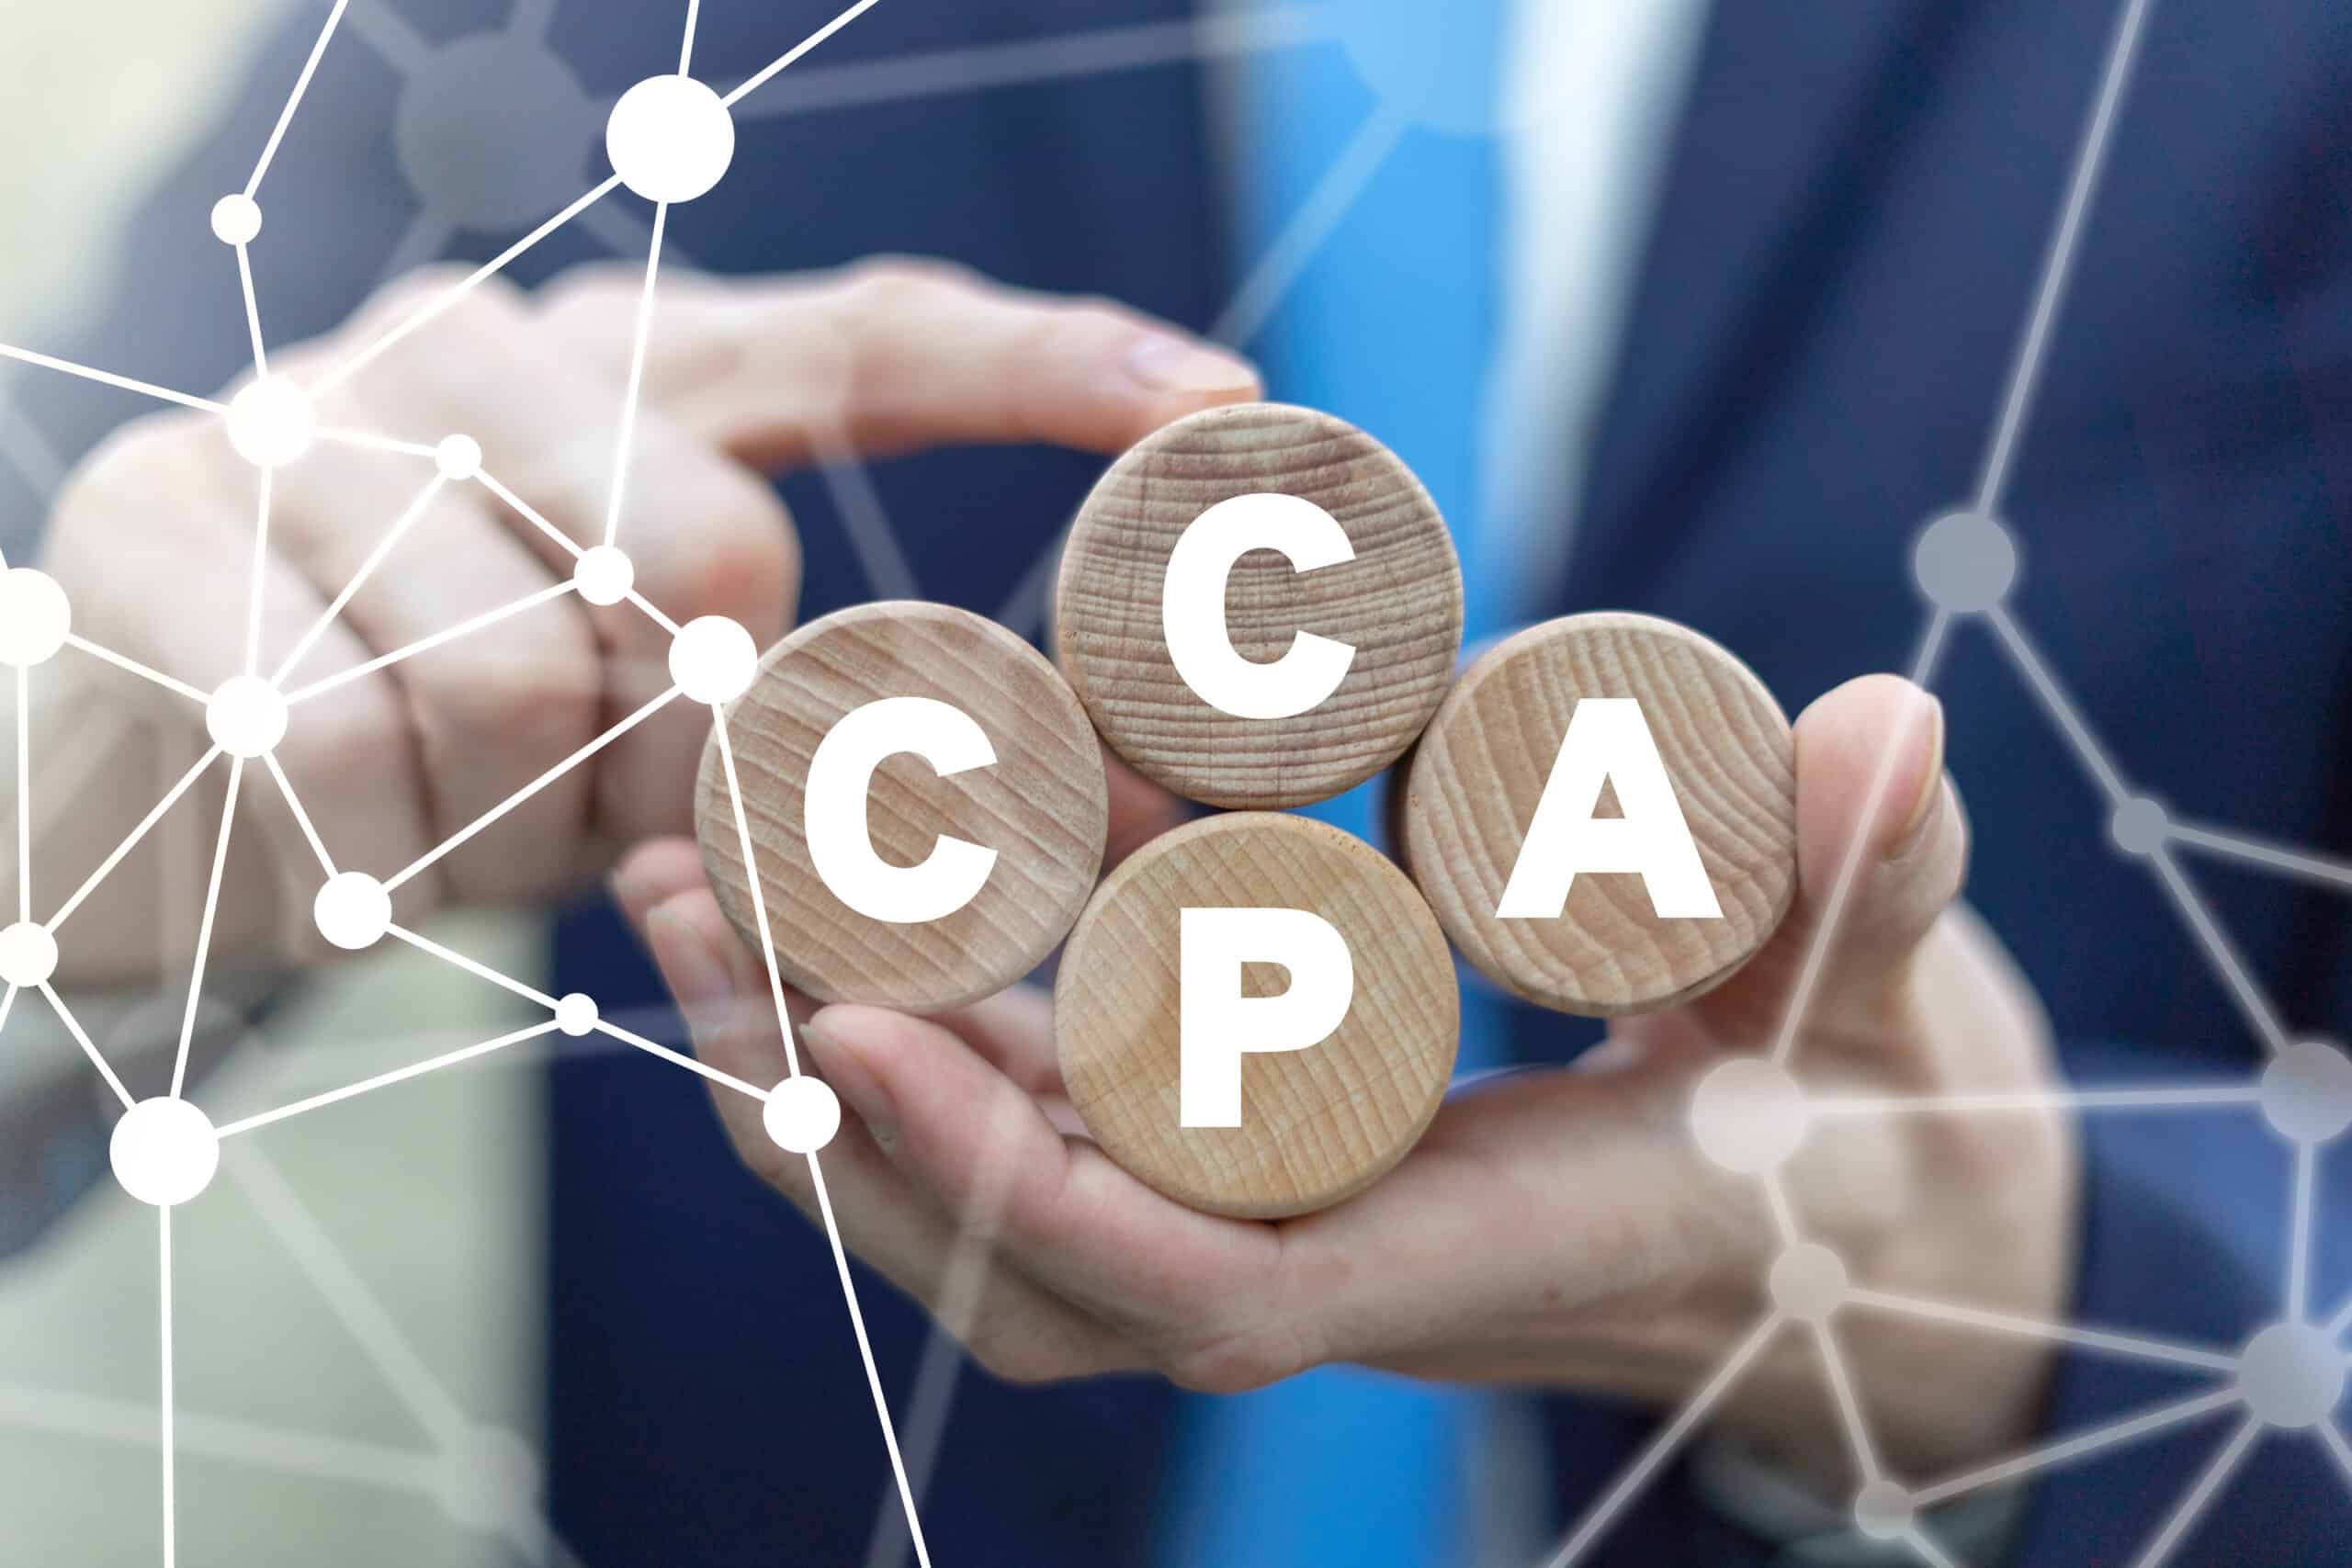 CCPA California Consumer Protection Act Concept.